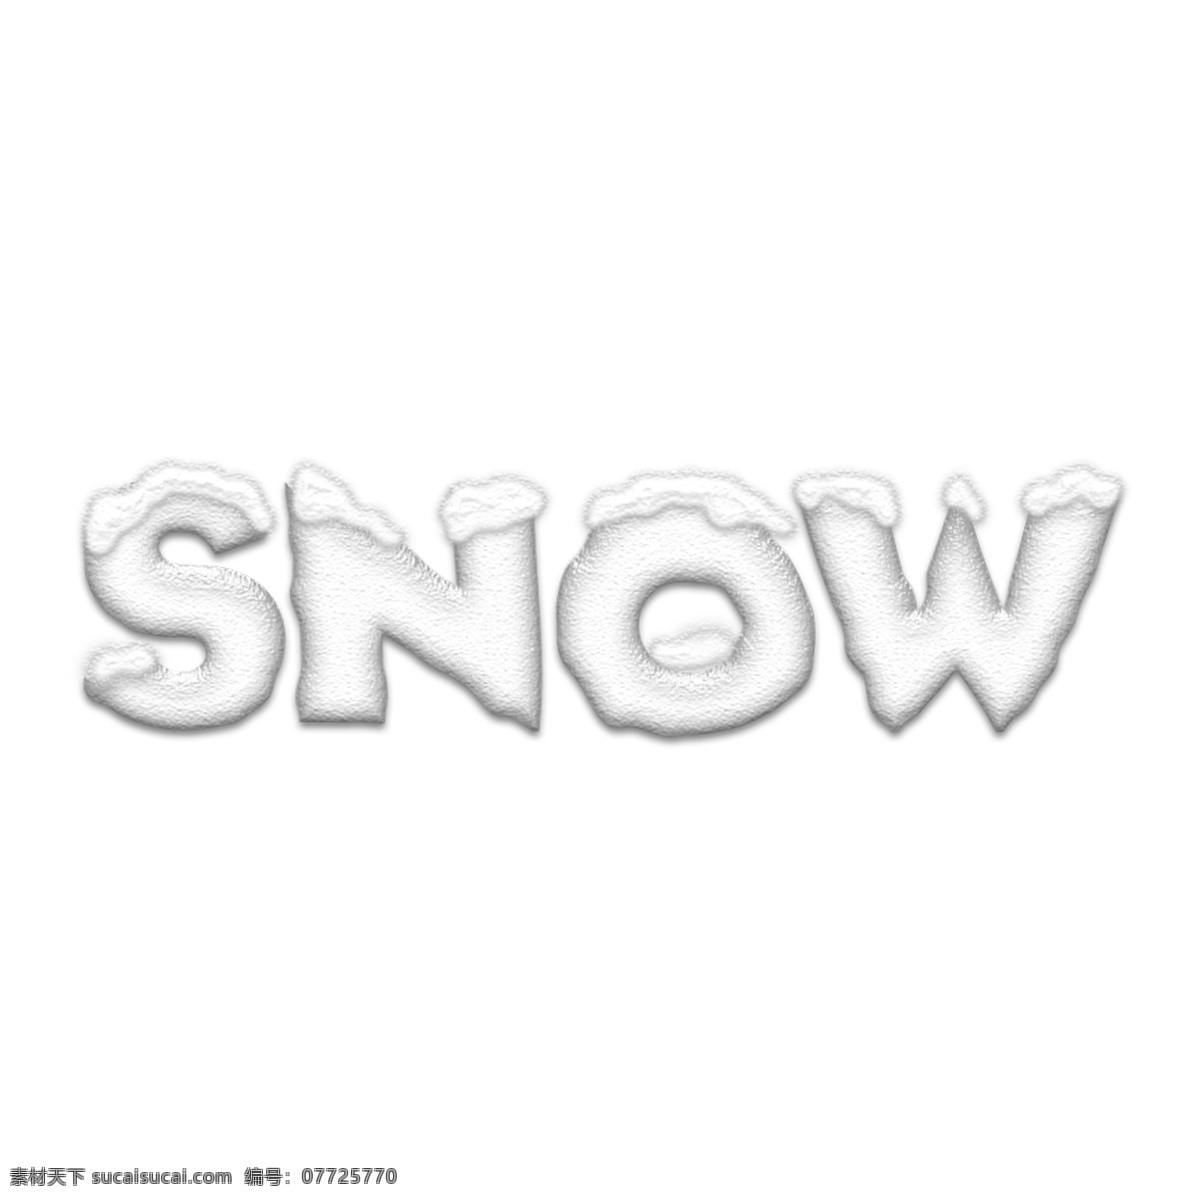 冬天 白色 雪 snow 英文 立体